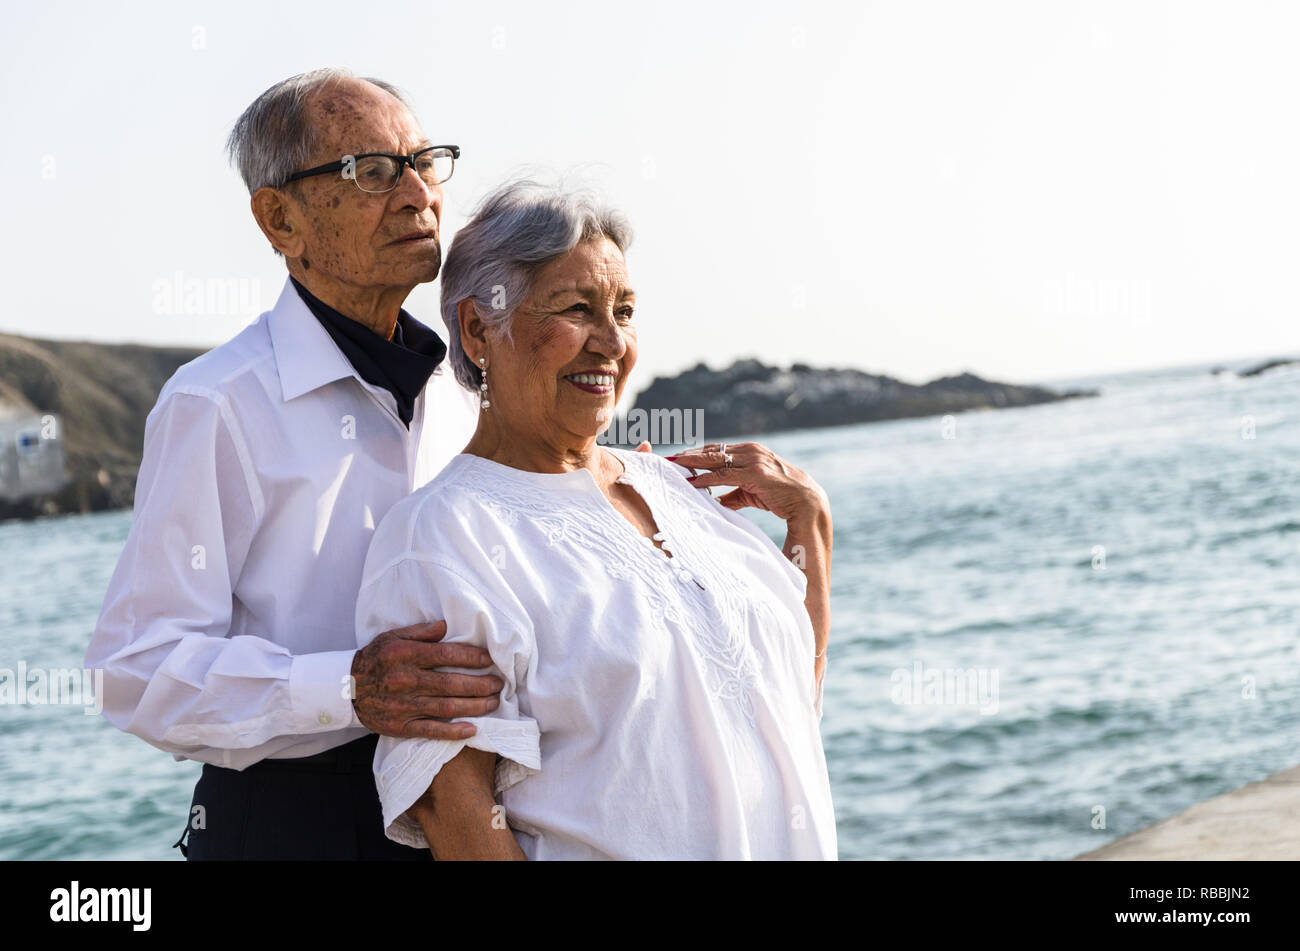 Senior Paar einander umarmen am Strand an einem sonnigen Tag Stockfoto